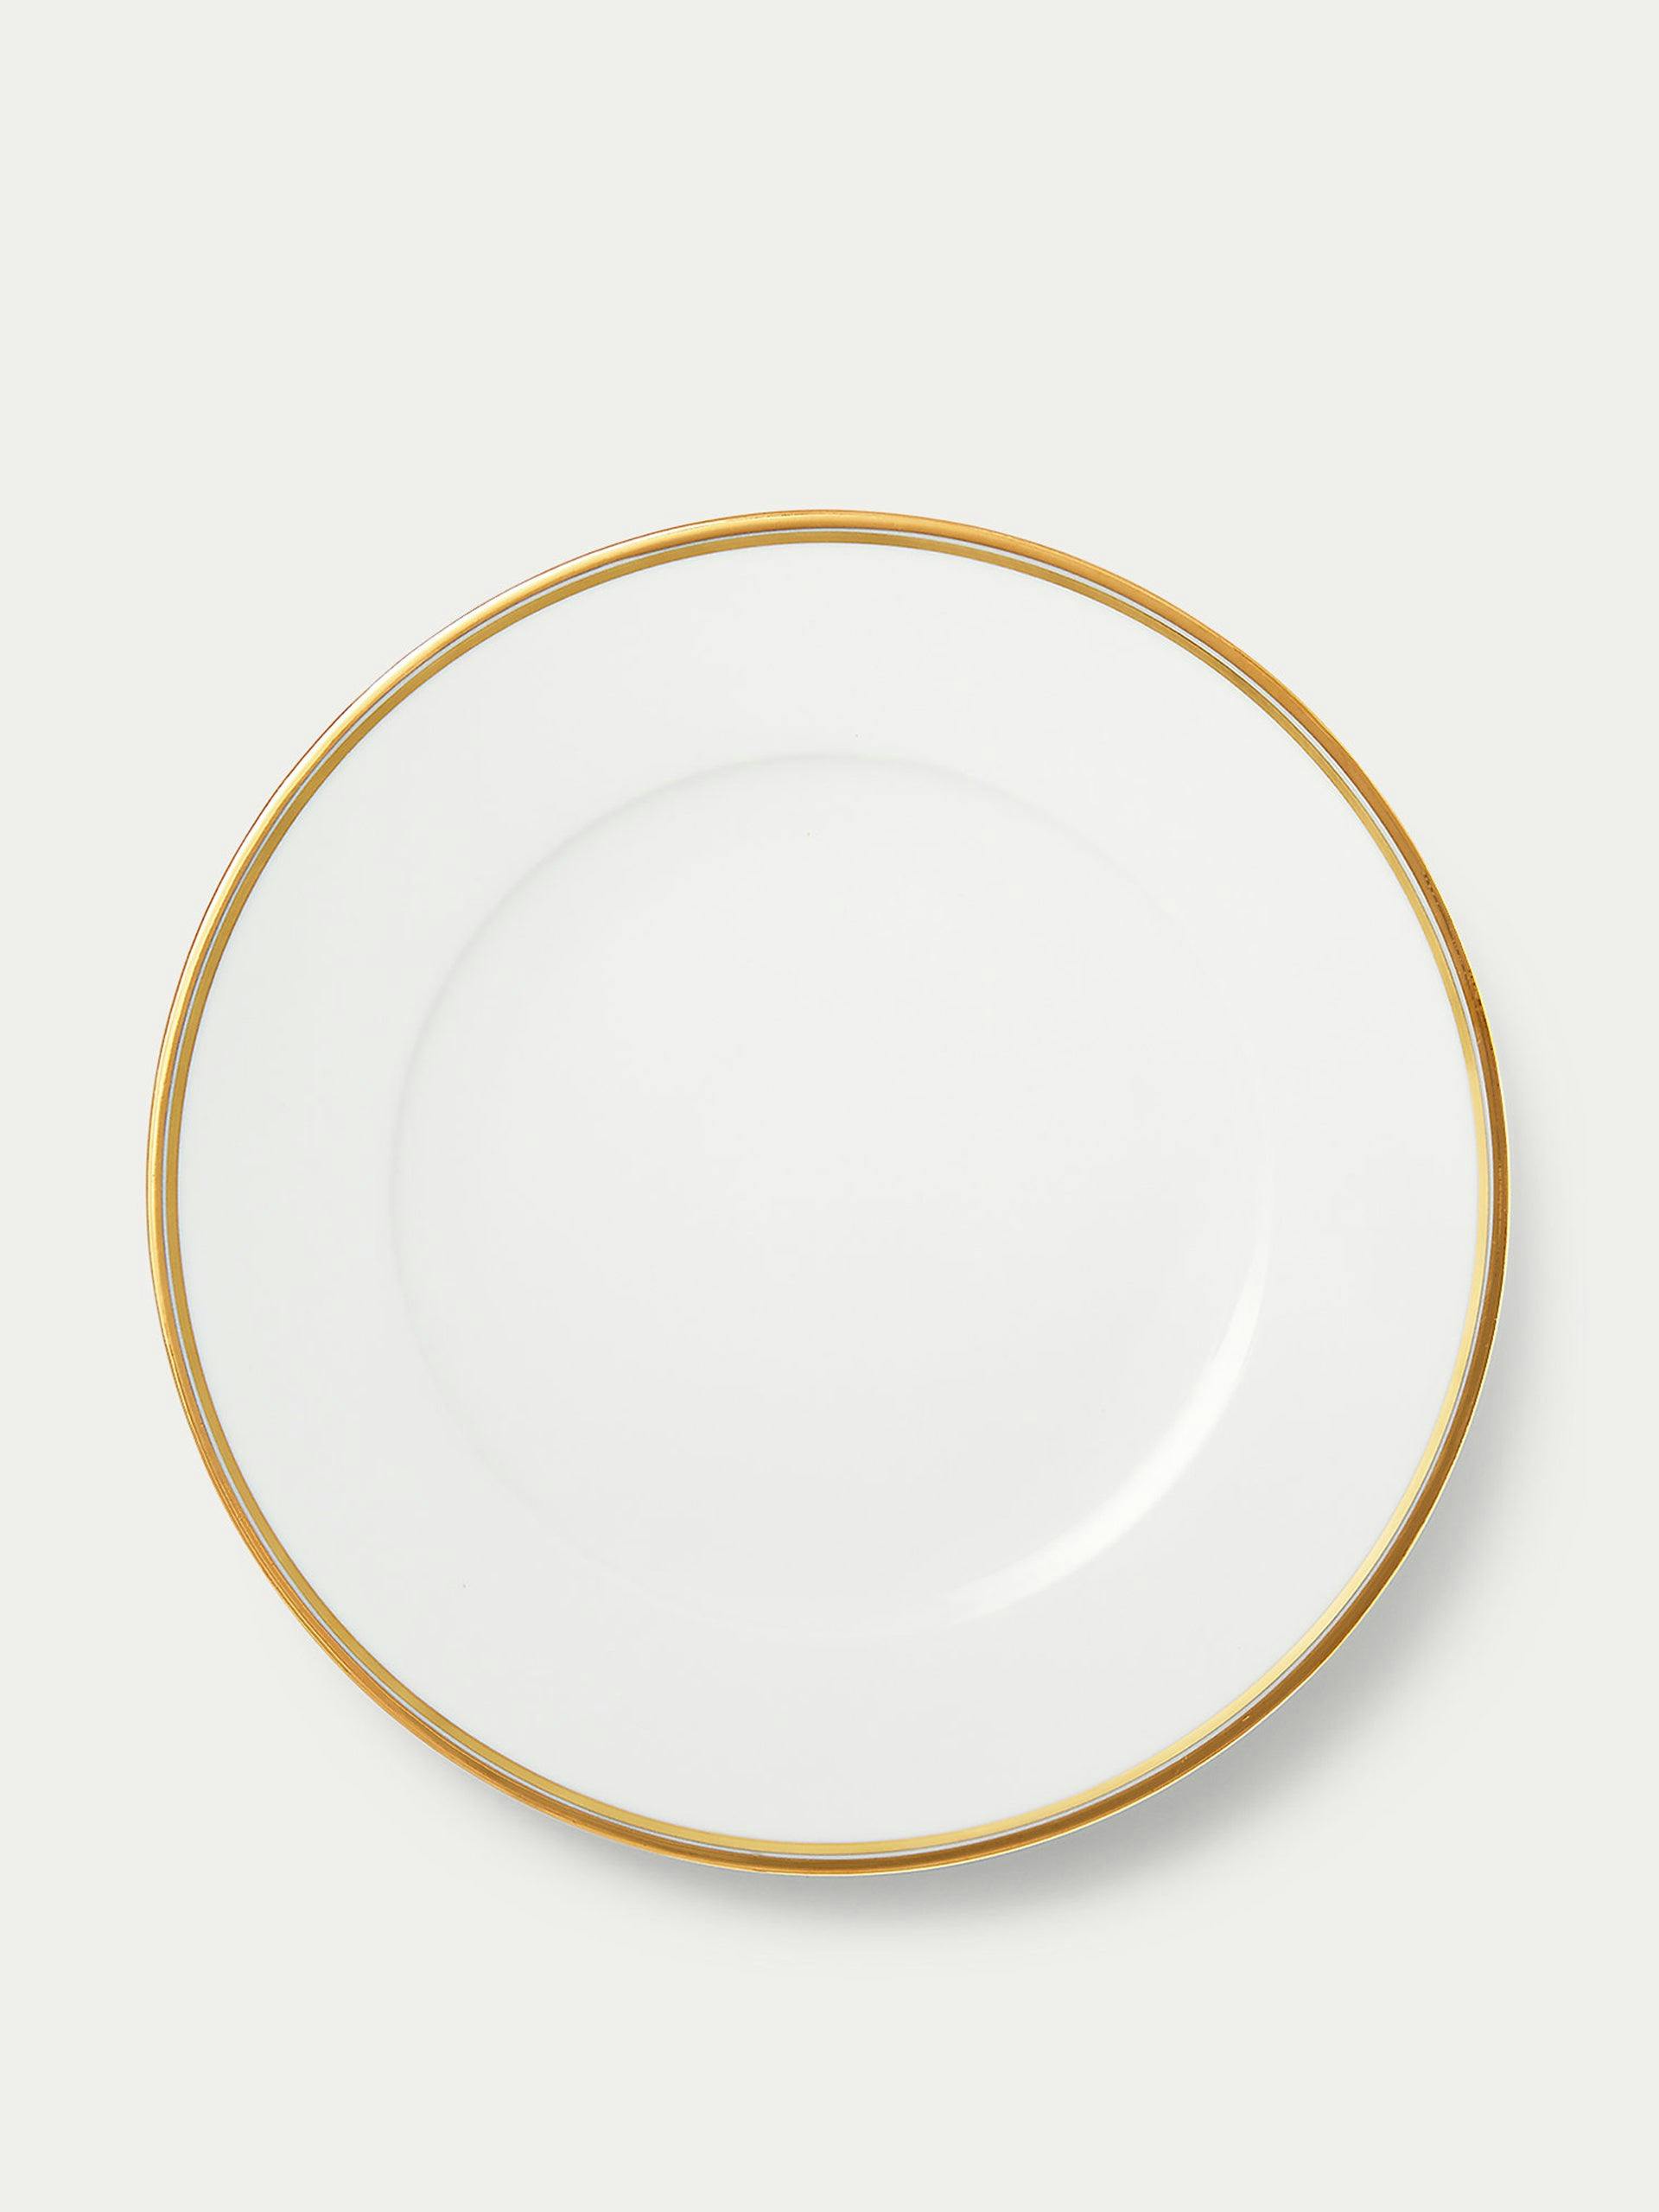 Gold rimmed dinner plate